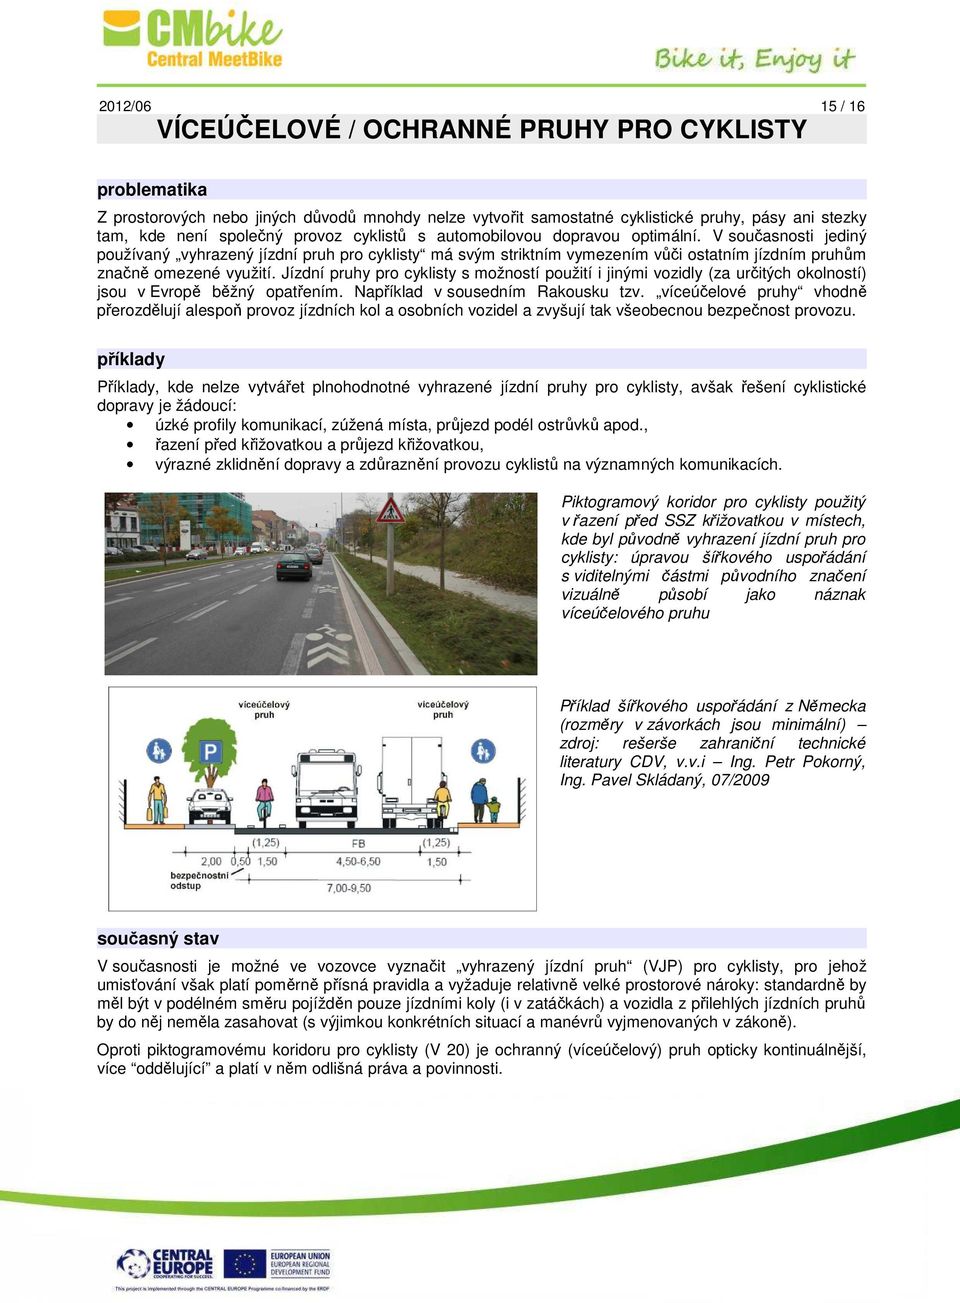 Jízdní pruhy pro cyklisty s možností použití i jinými vozidly (za určitých okolností) jsou v Evropě běžný opatřením. Například v sousedním Rakousku tzv.